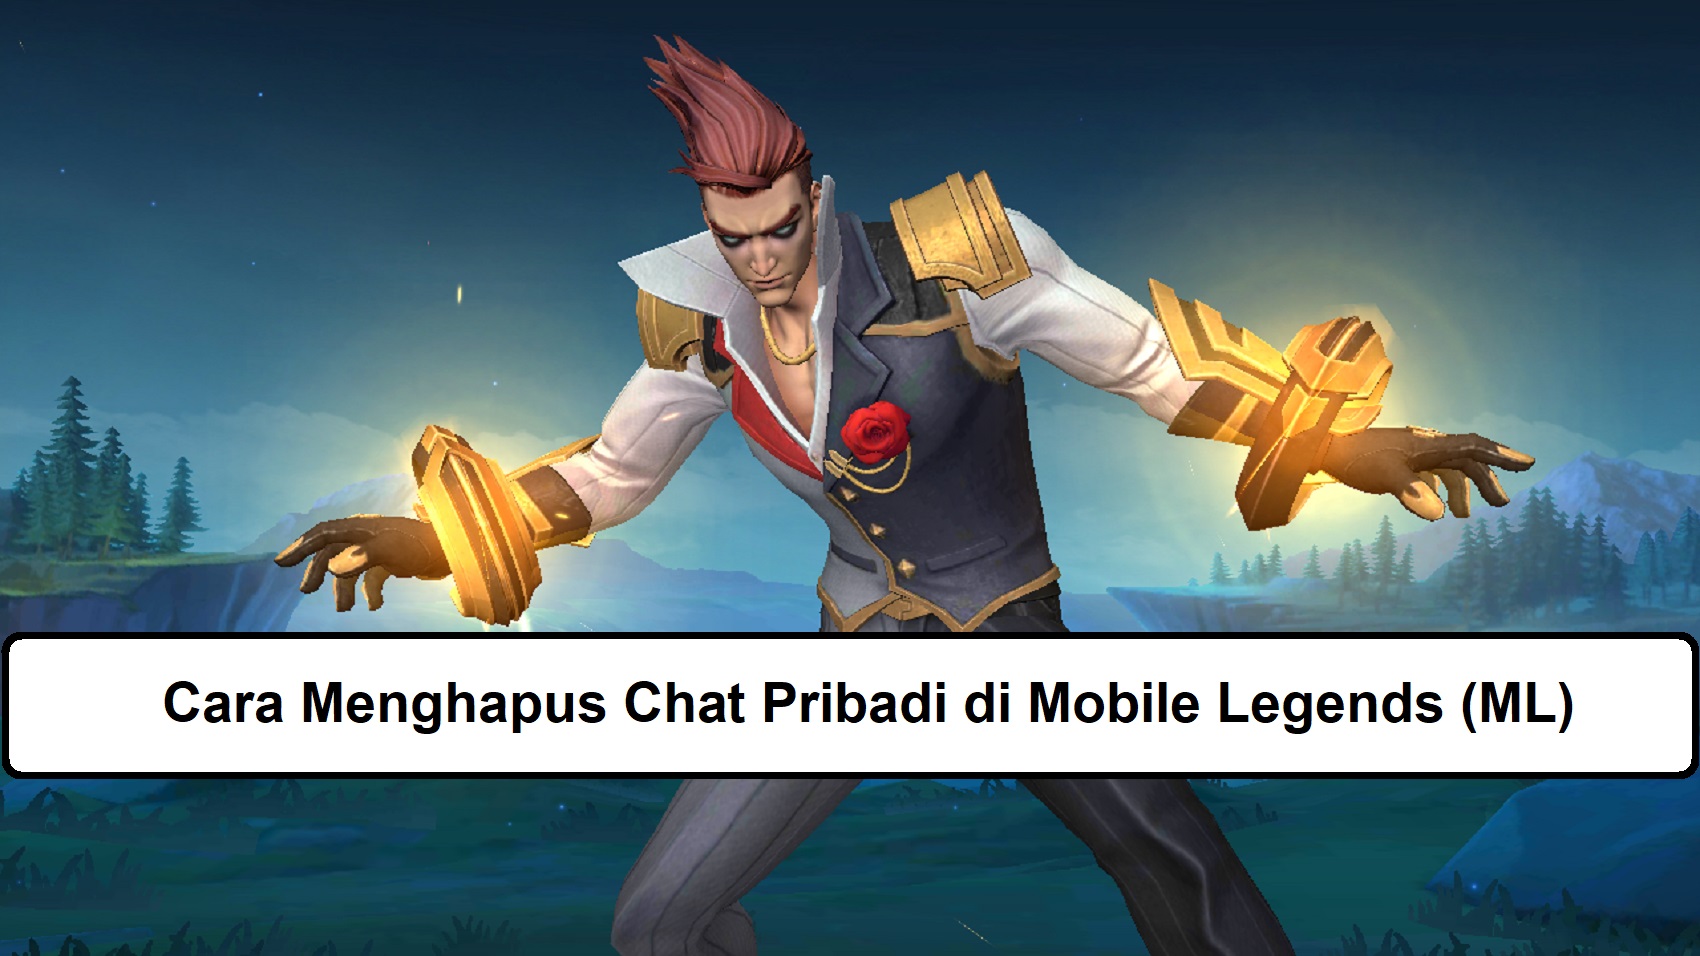 Cara Menghapus Chat Pribadi di Mobile Legends (ML)